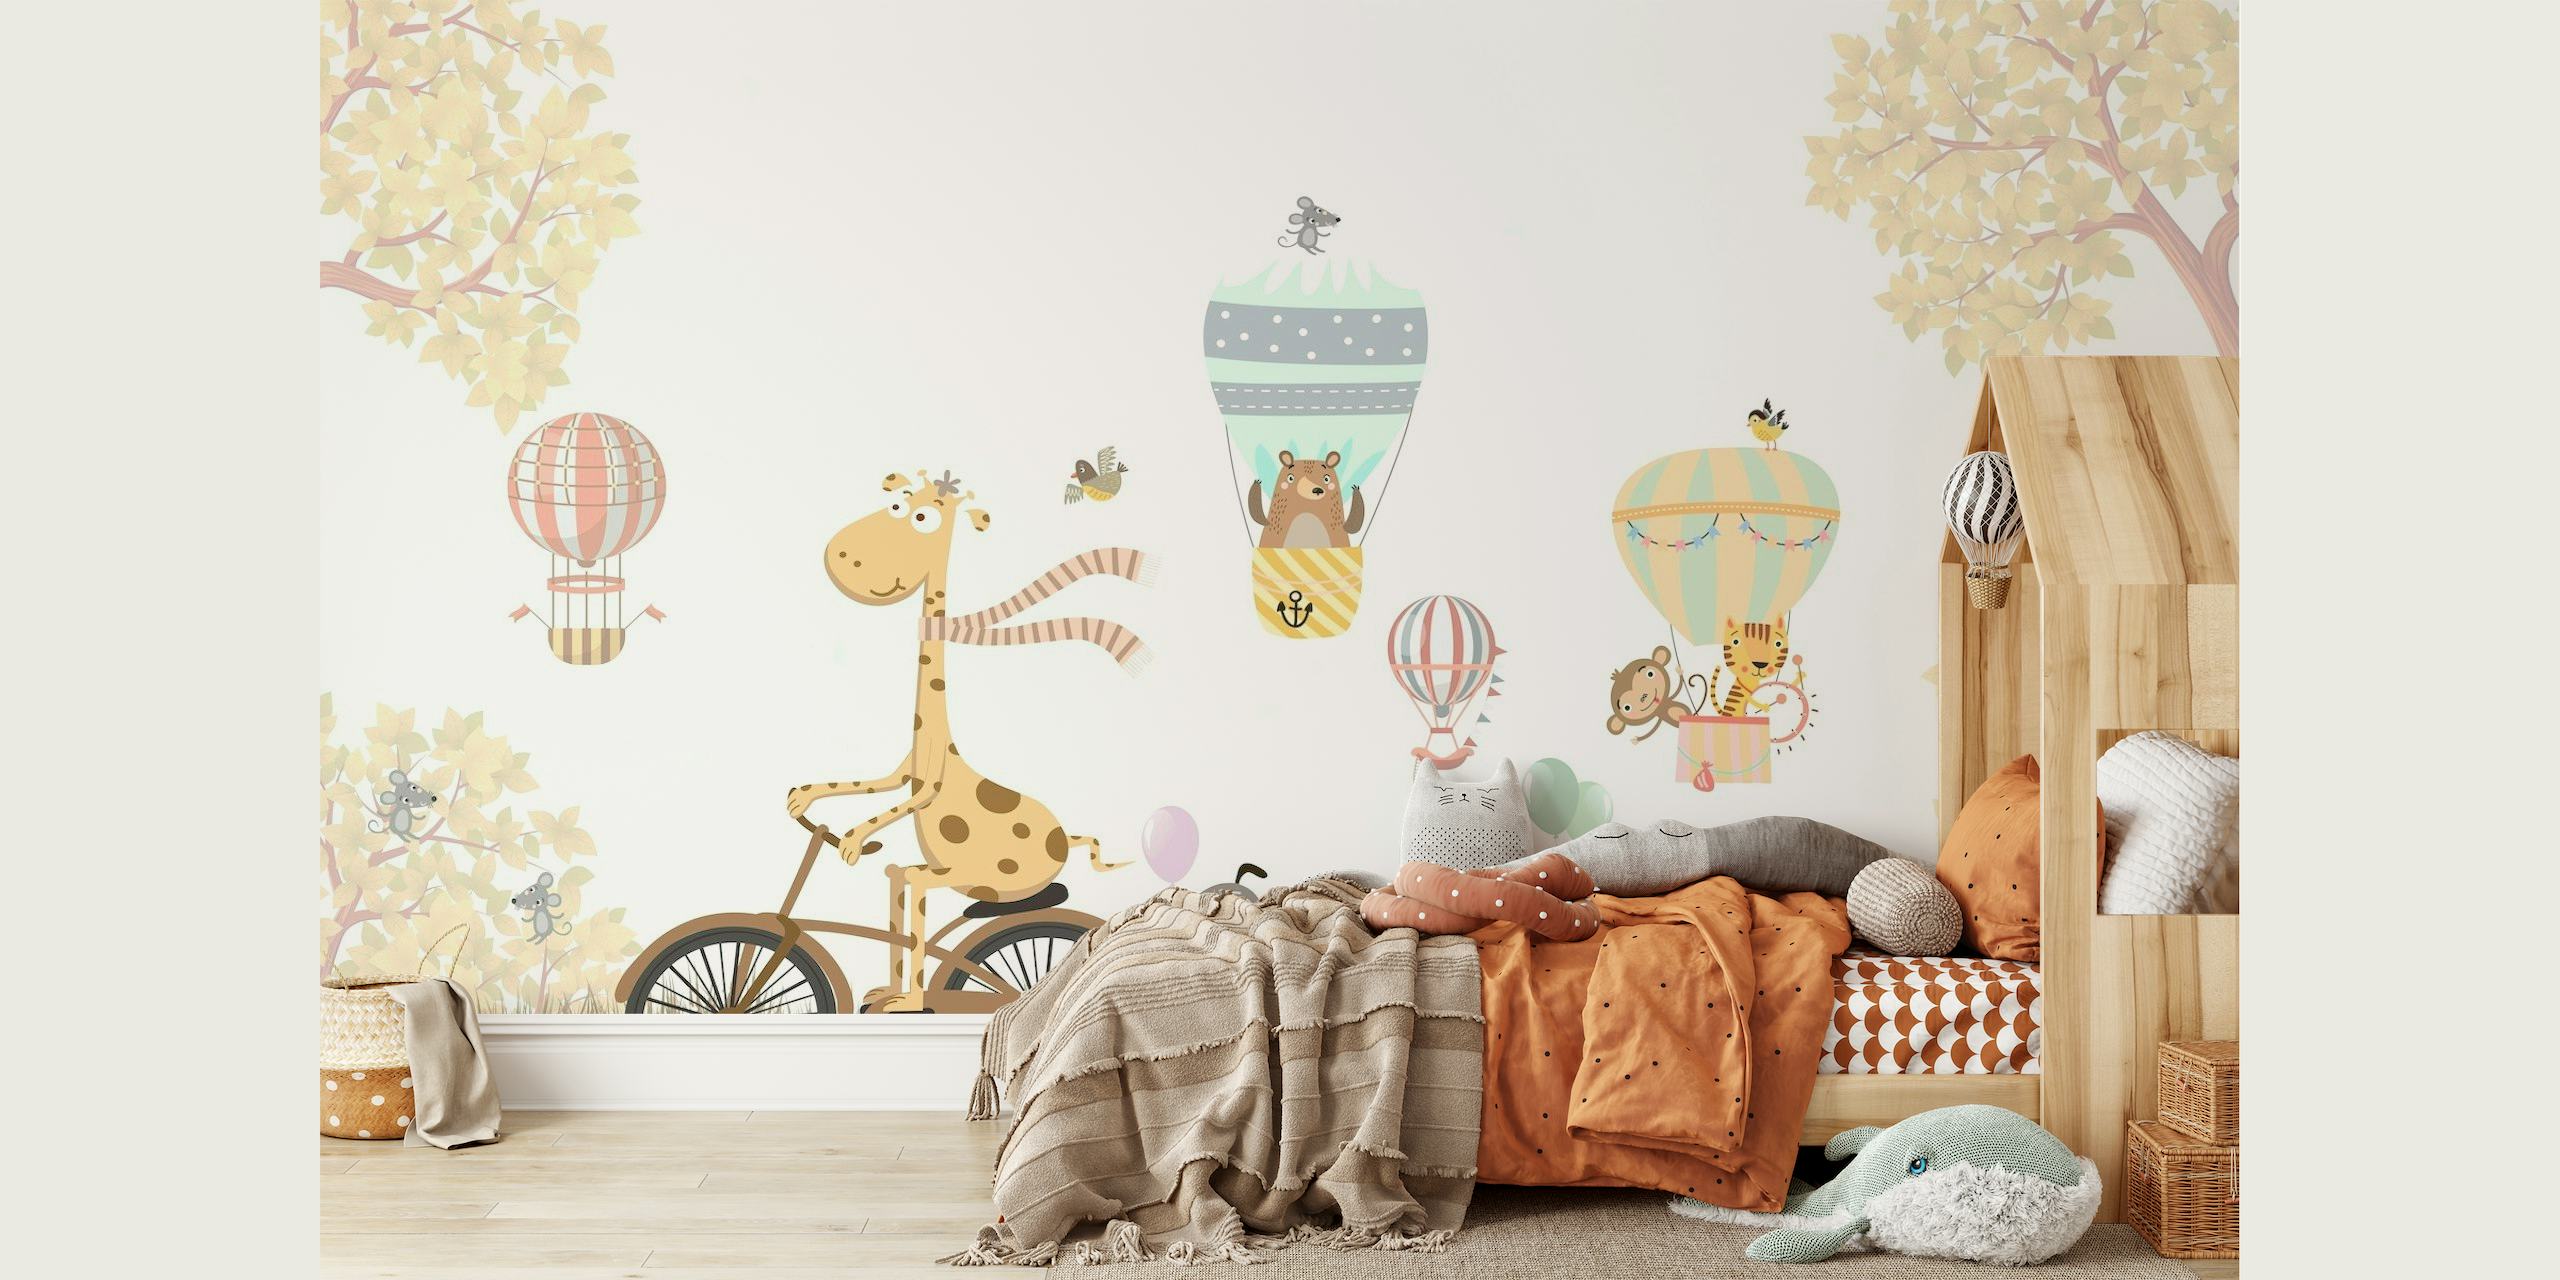 Ilustração de animais em uma bicicleta e balões de ar quente em um fotomural vinílico de paisagem em tons pastel